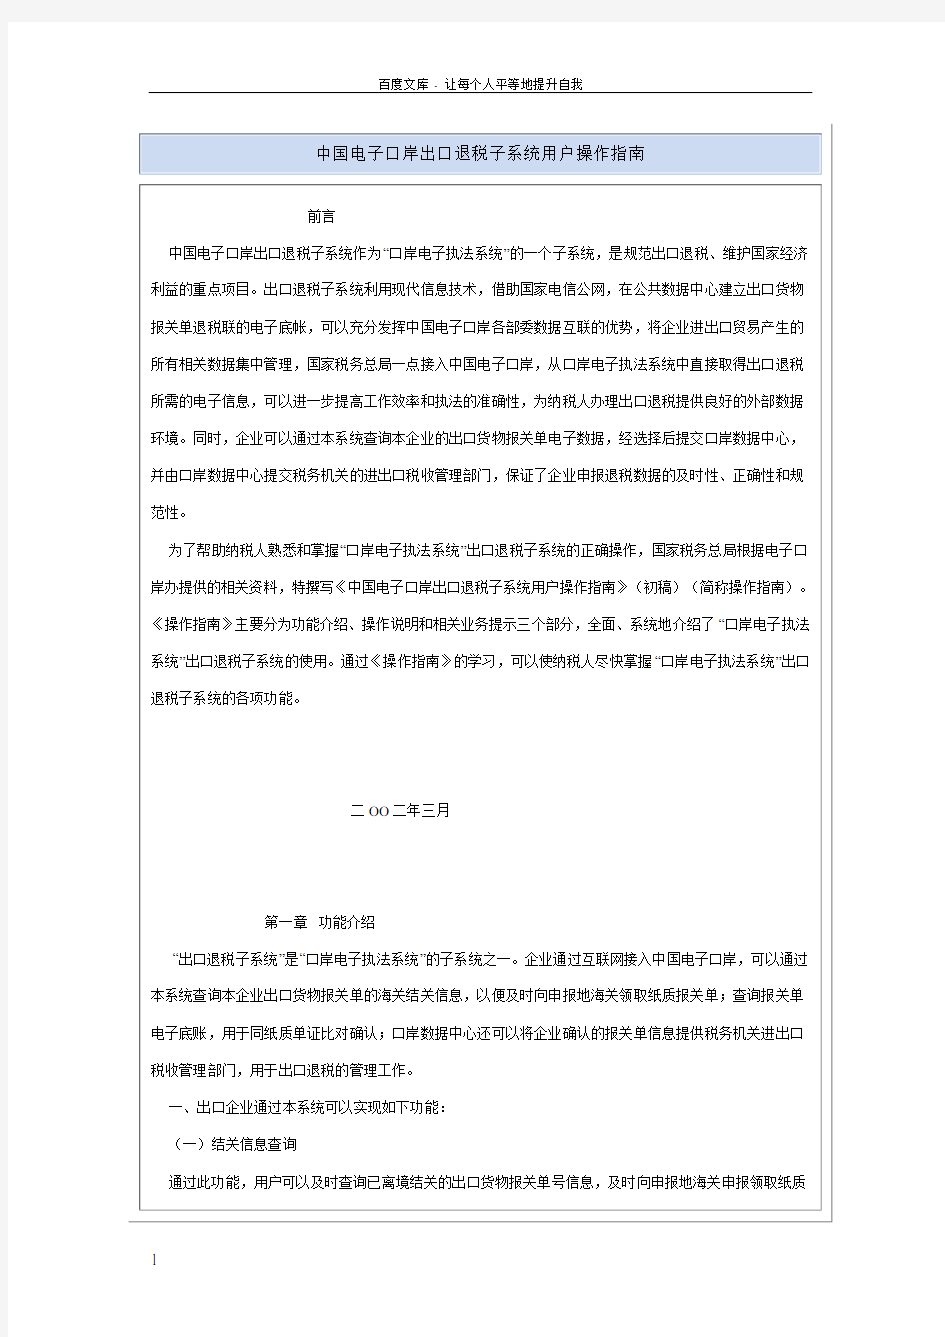 中国电子口岸出口退税子系统用户操作指南(并茂)